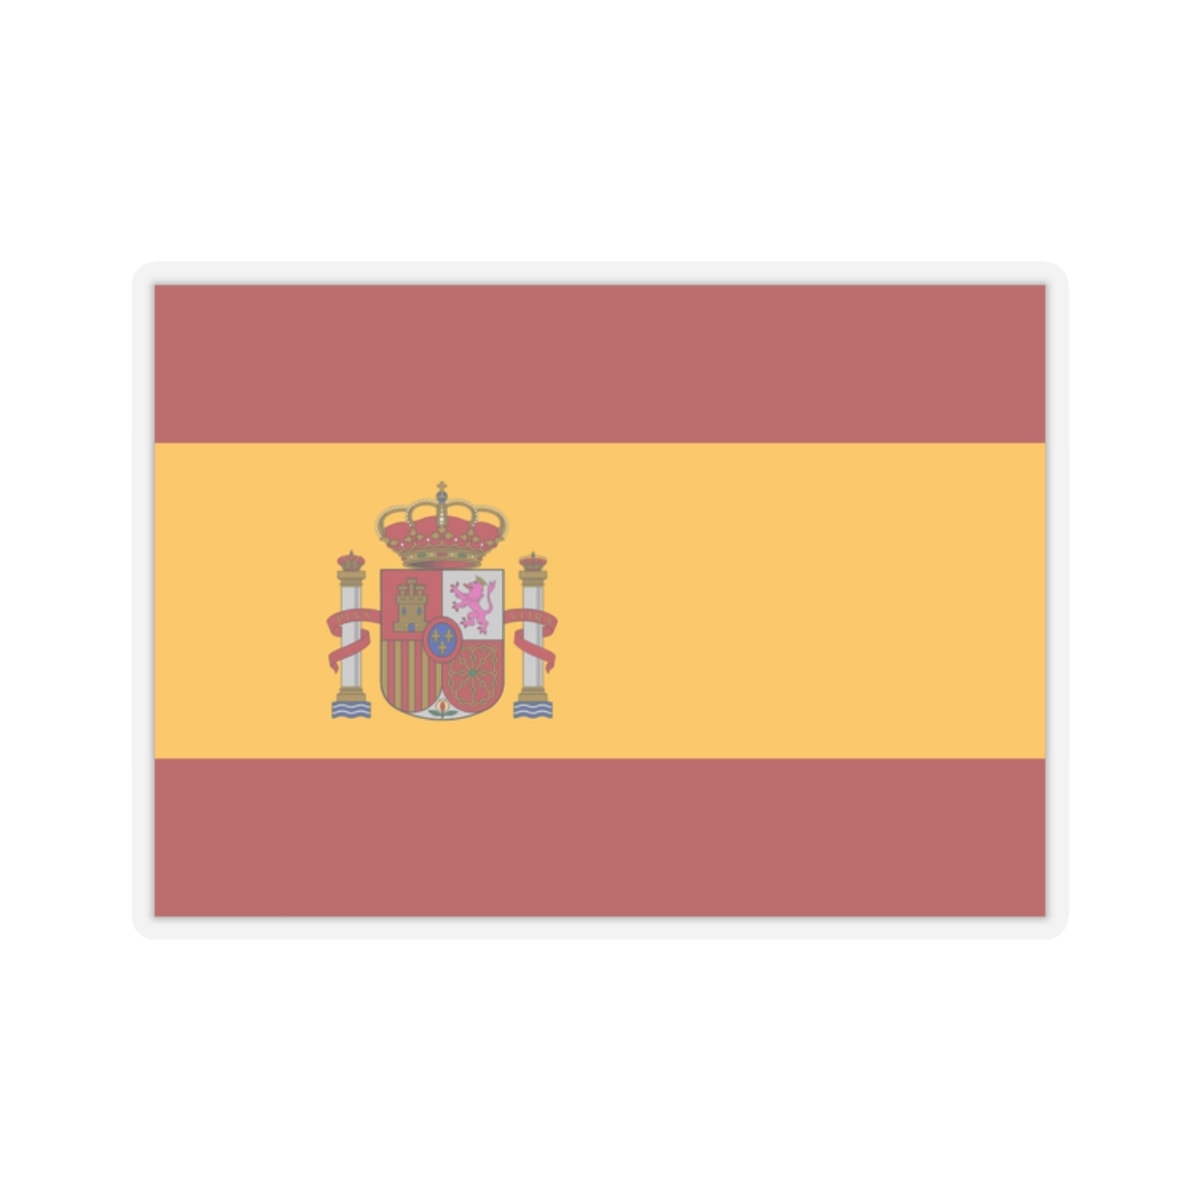 spanish flag emoji